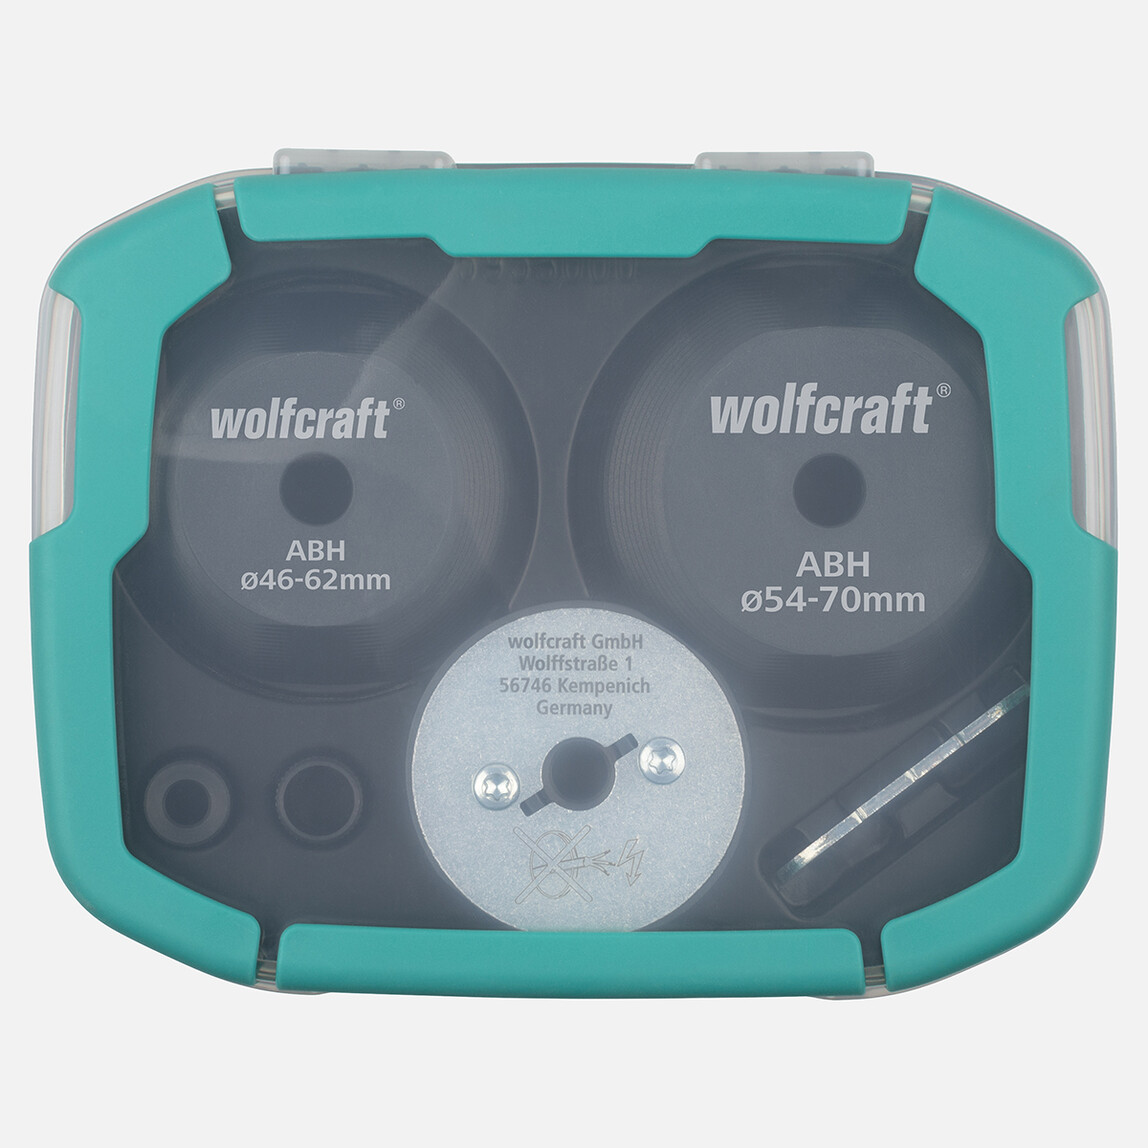    Wolfcraft Delik Genişletme Yardımcısı 35-70mm  Set  